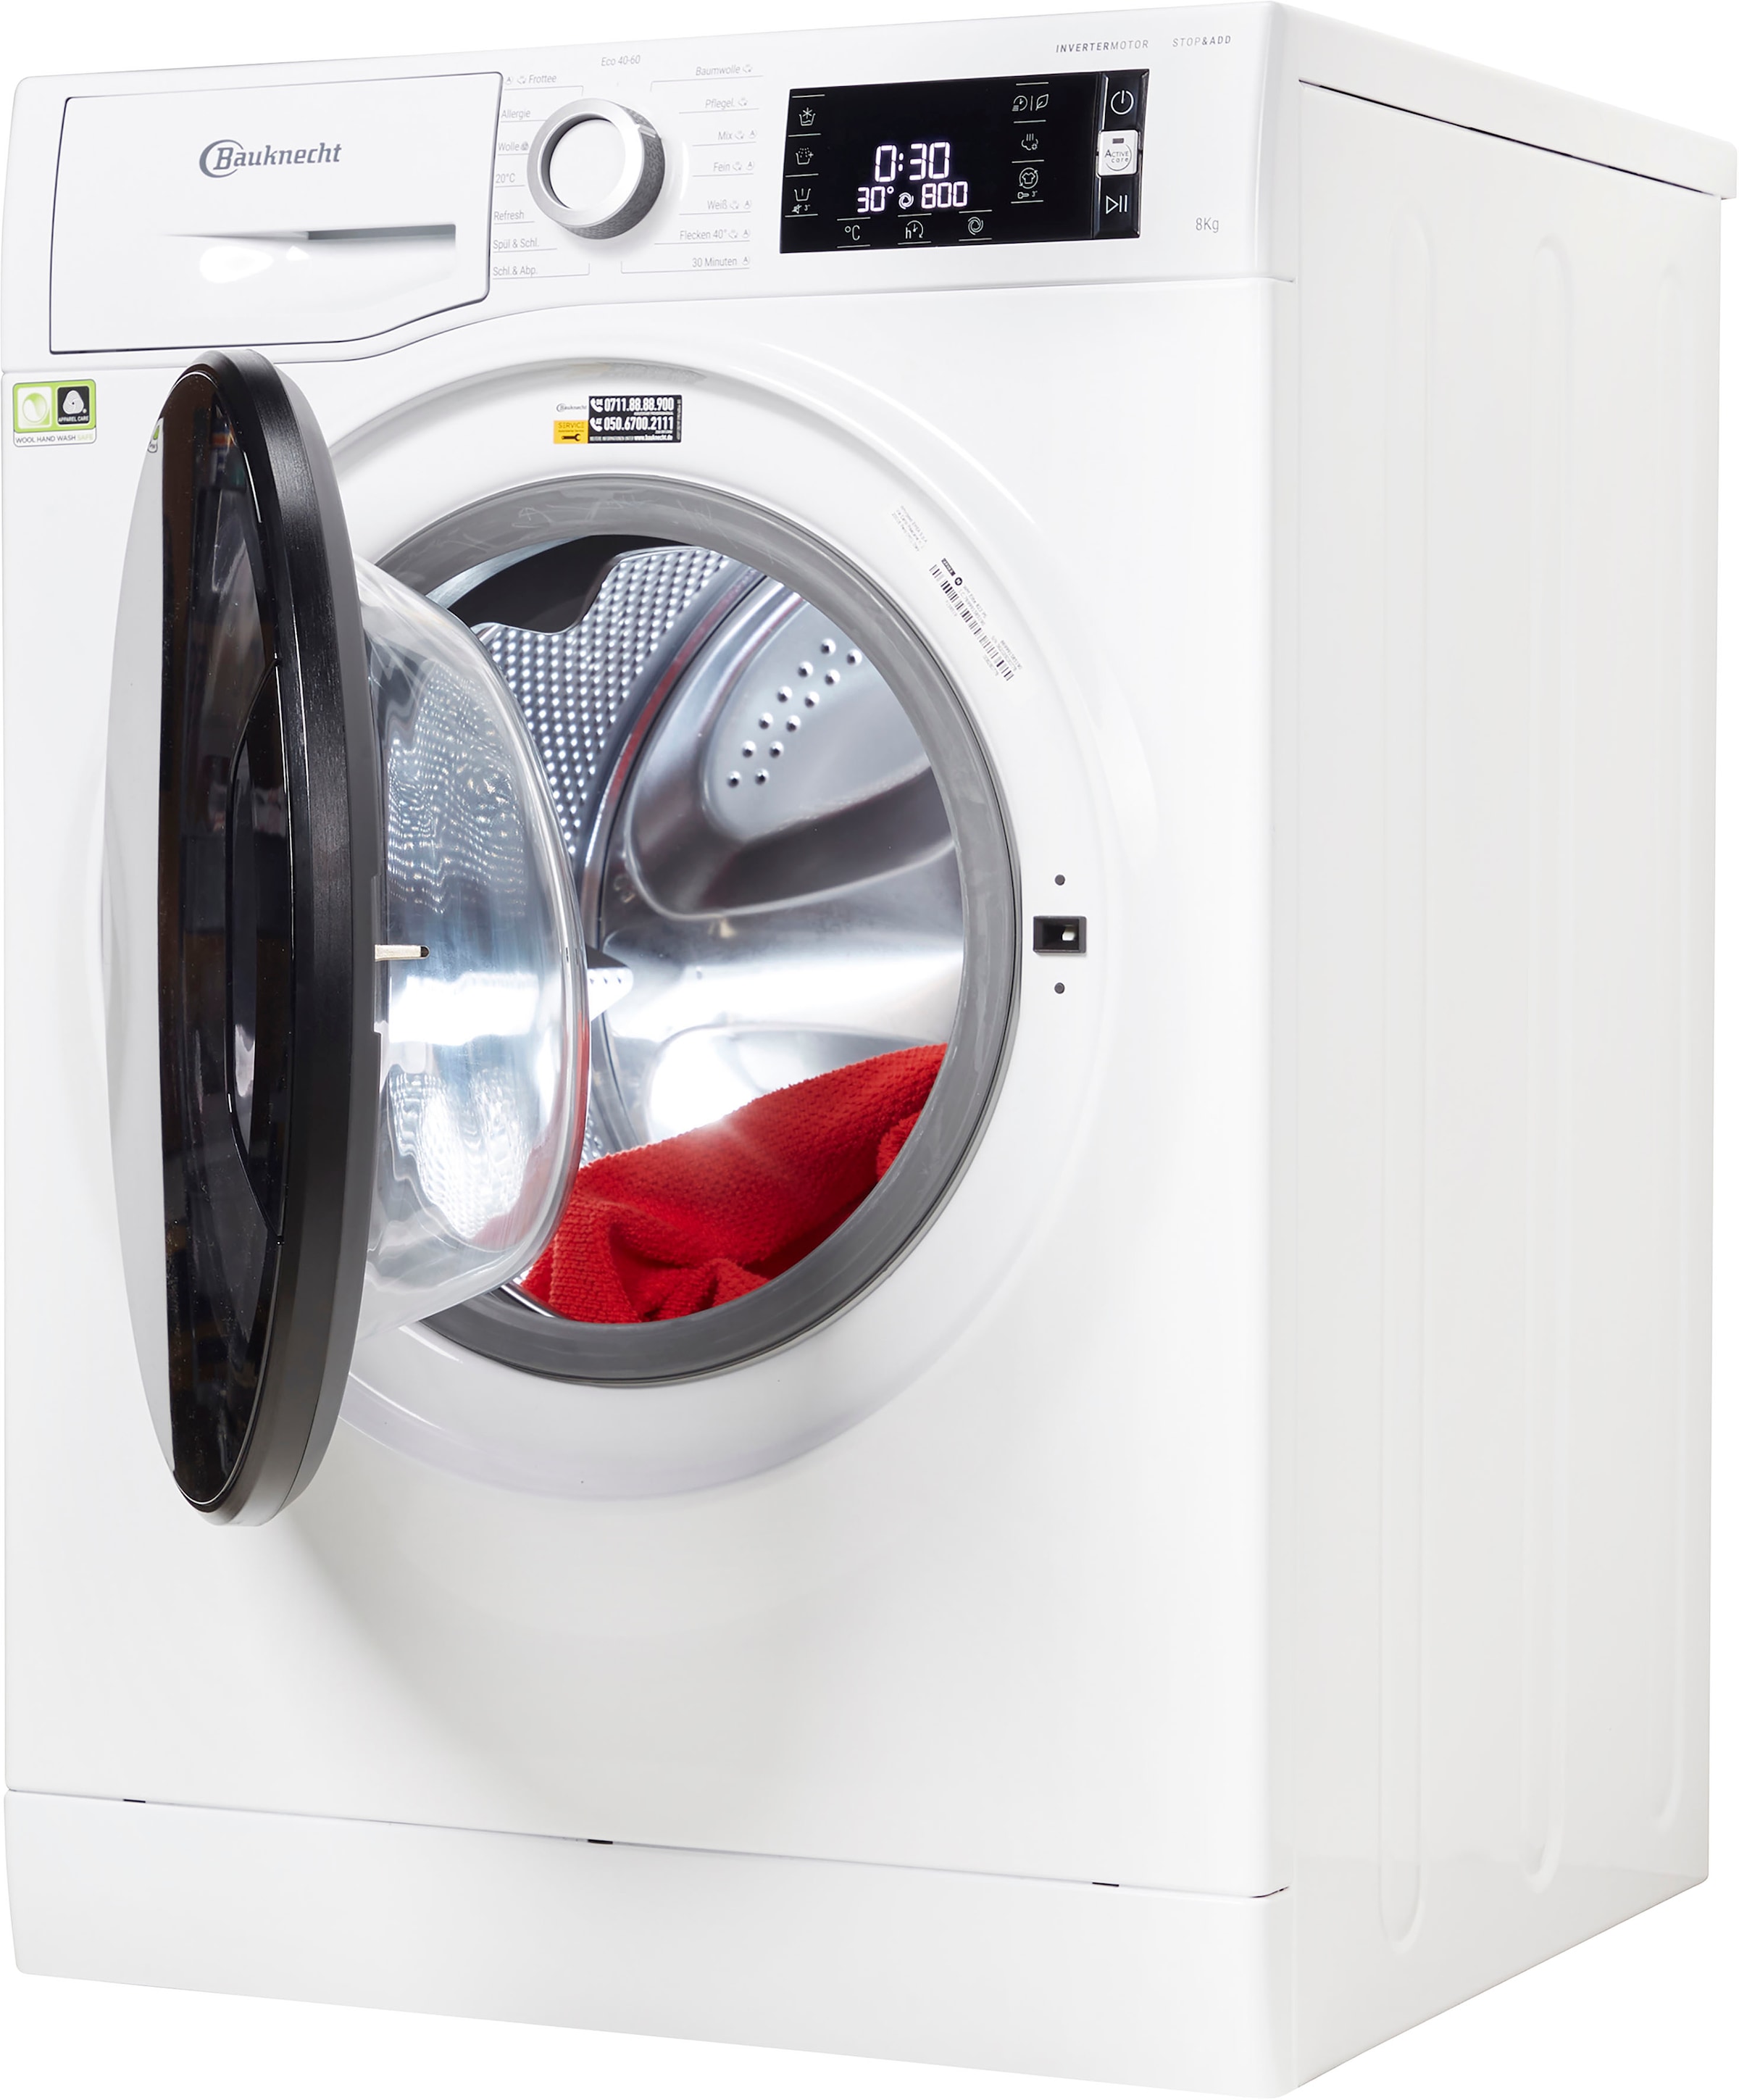 BAUKNECHT Waschmaschine »WM ELITE U/min kg, OTTO PS, PS«, WM ELITE 823 bei 1400 823 jetzt 8